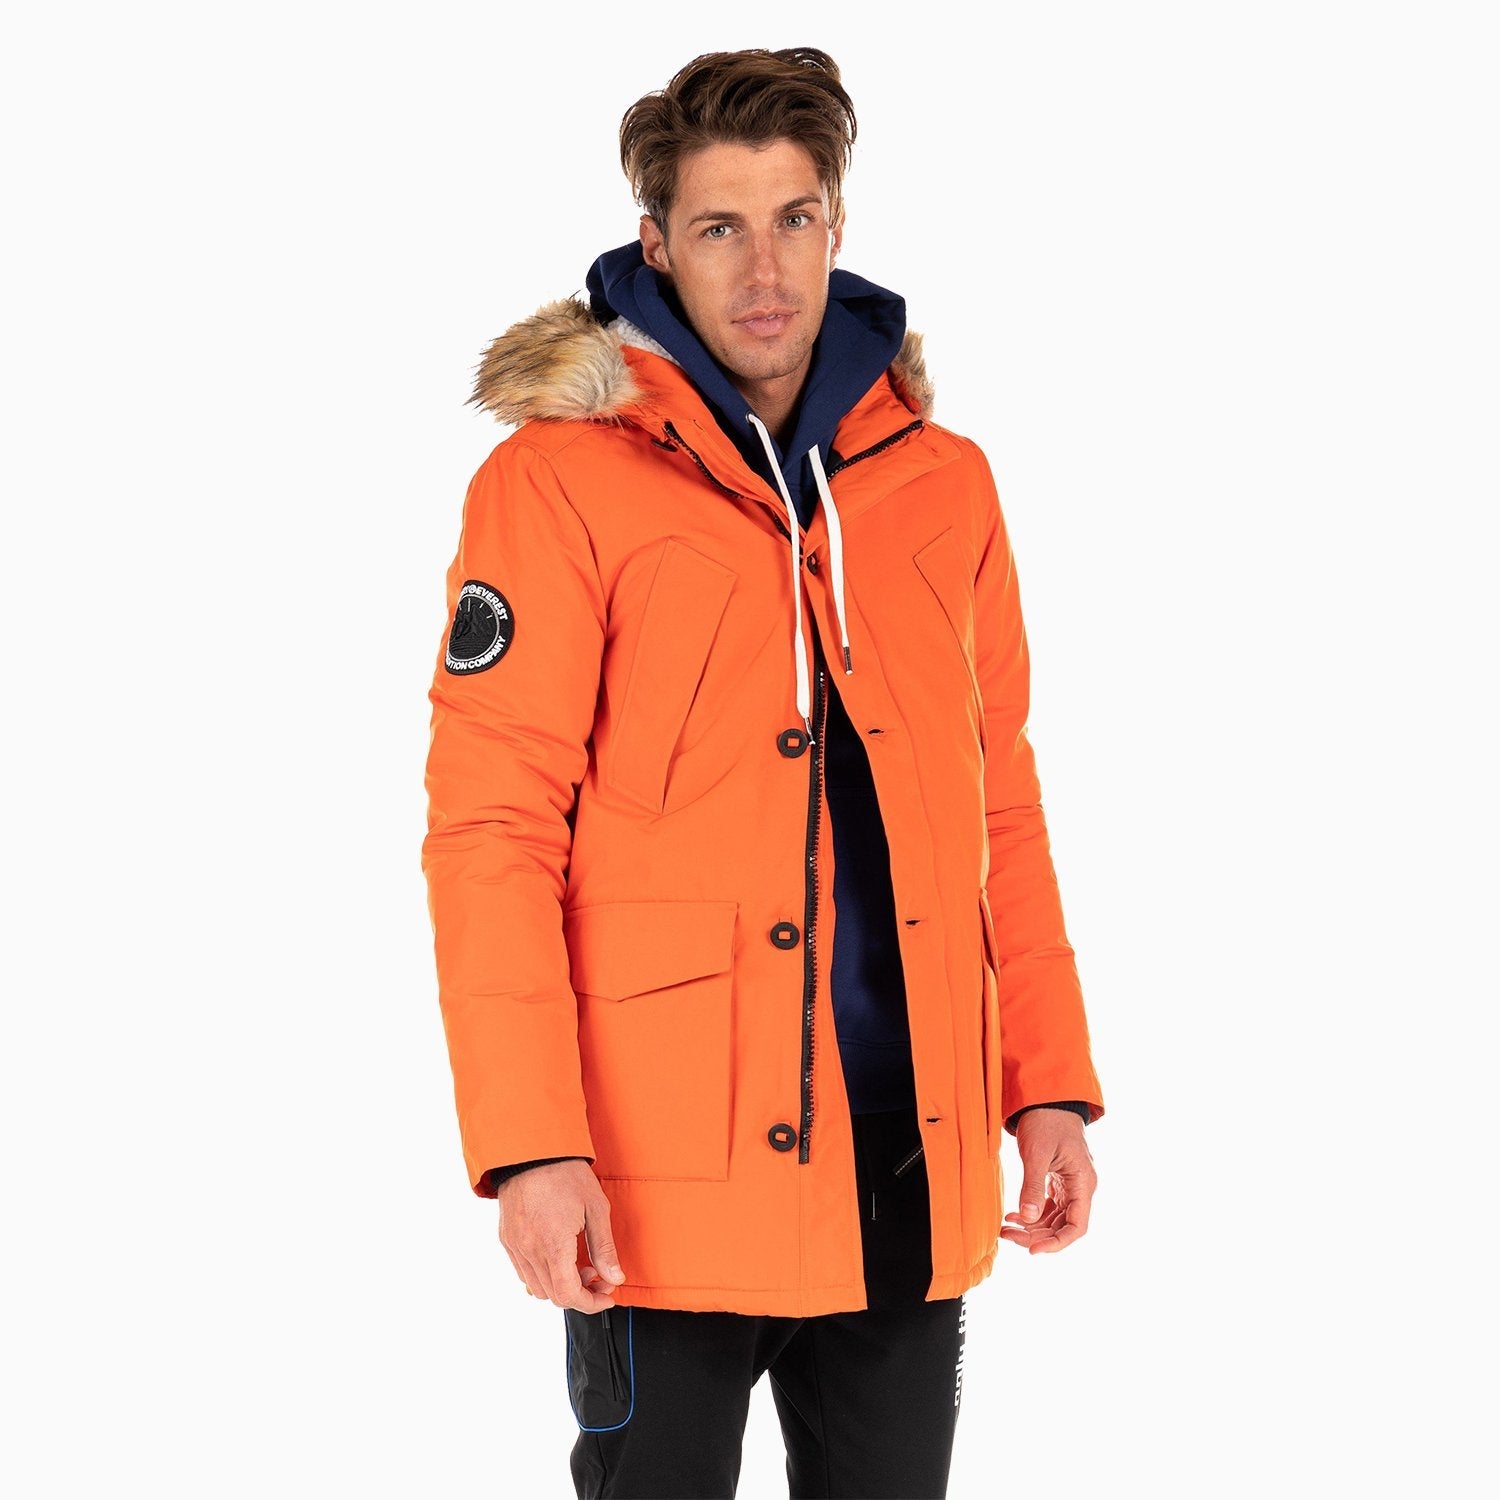 SUPERDRY | Men's Everest Parka Jacket - Color: Orange - Tops and Bottoms USA -